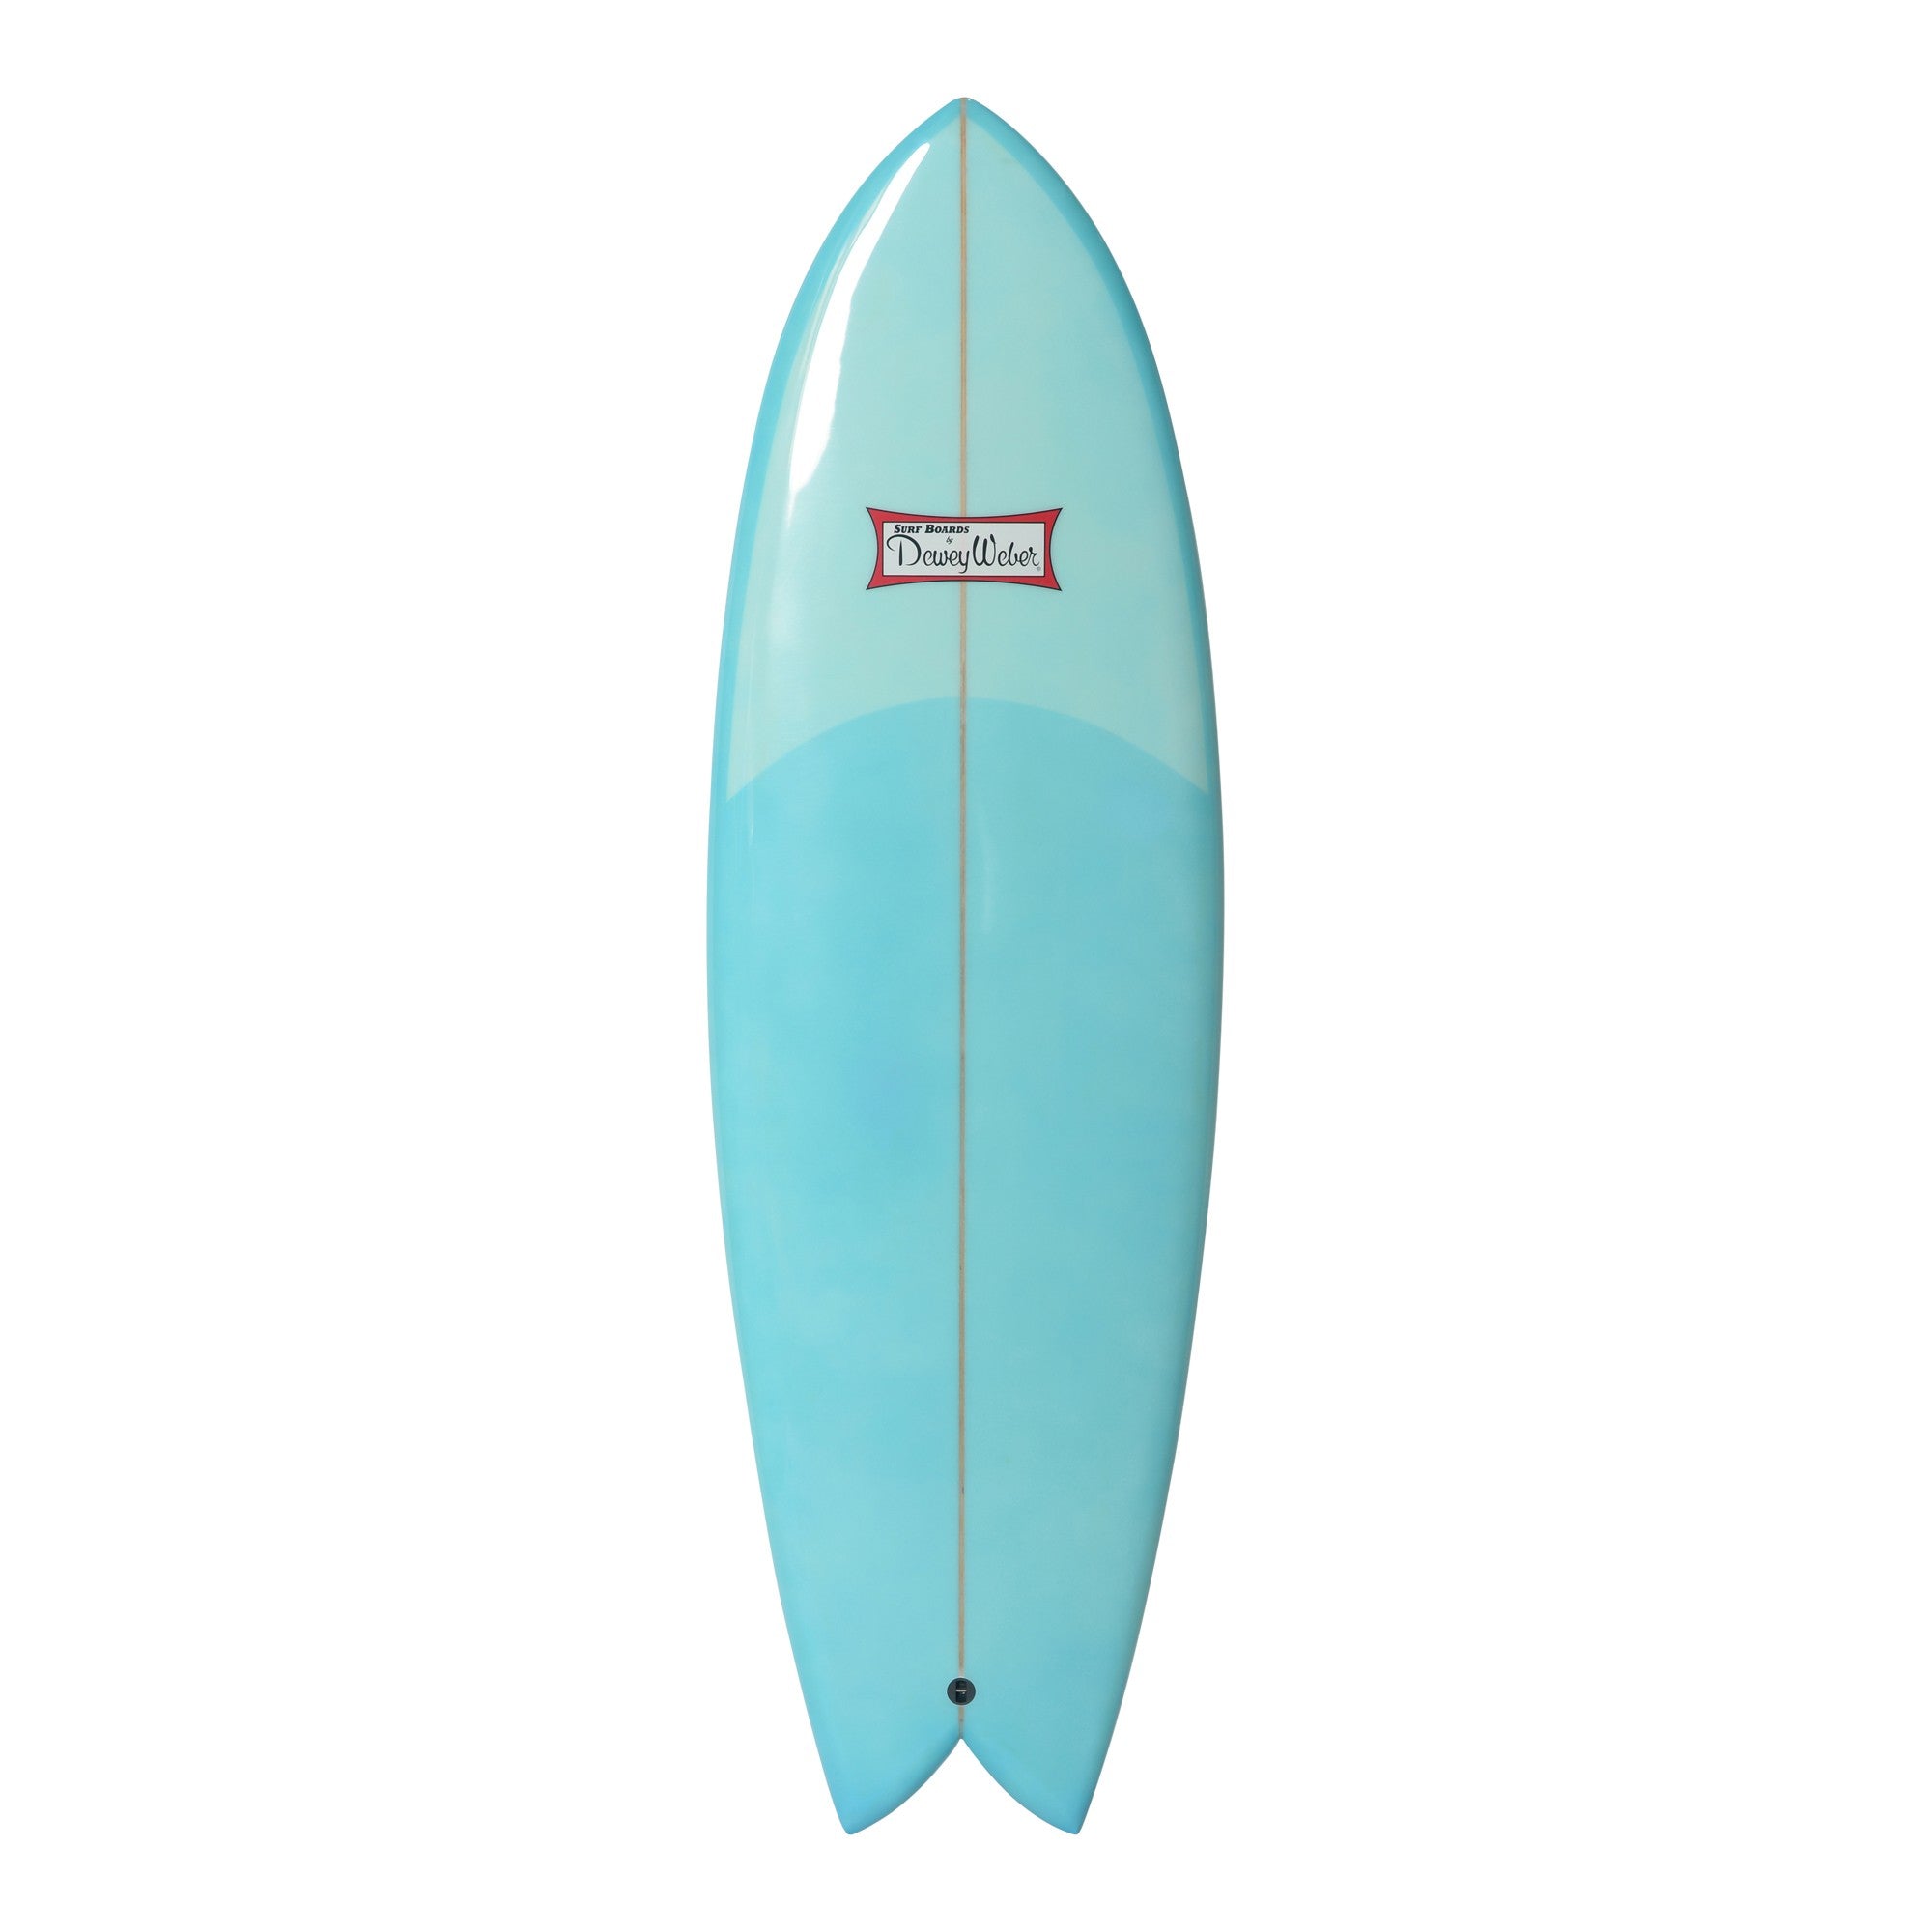 WEBER SURFBOARDS - Swish 5'6 - Blue